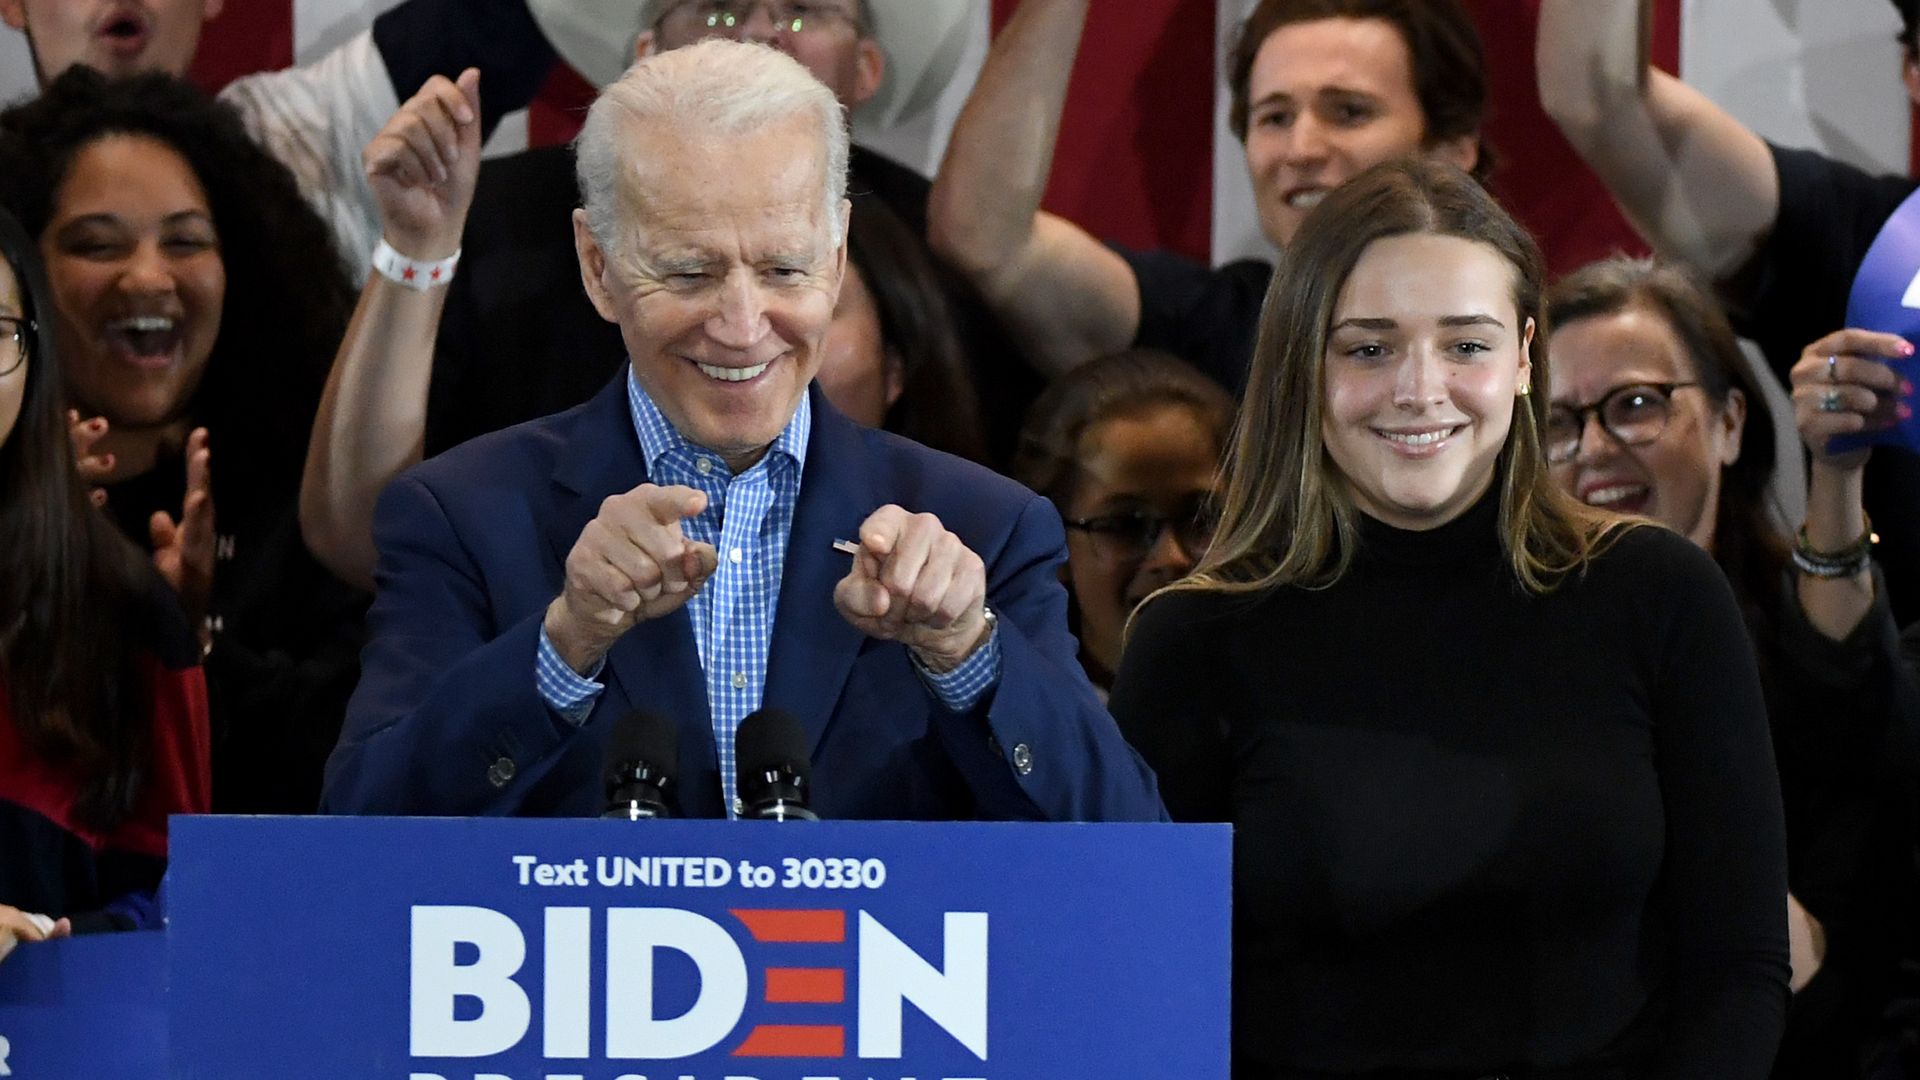 Joe Biden at a podium pointing at the crowd.